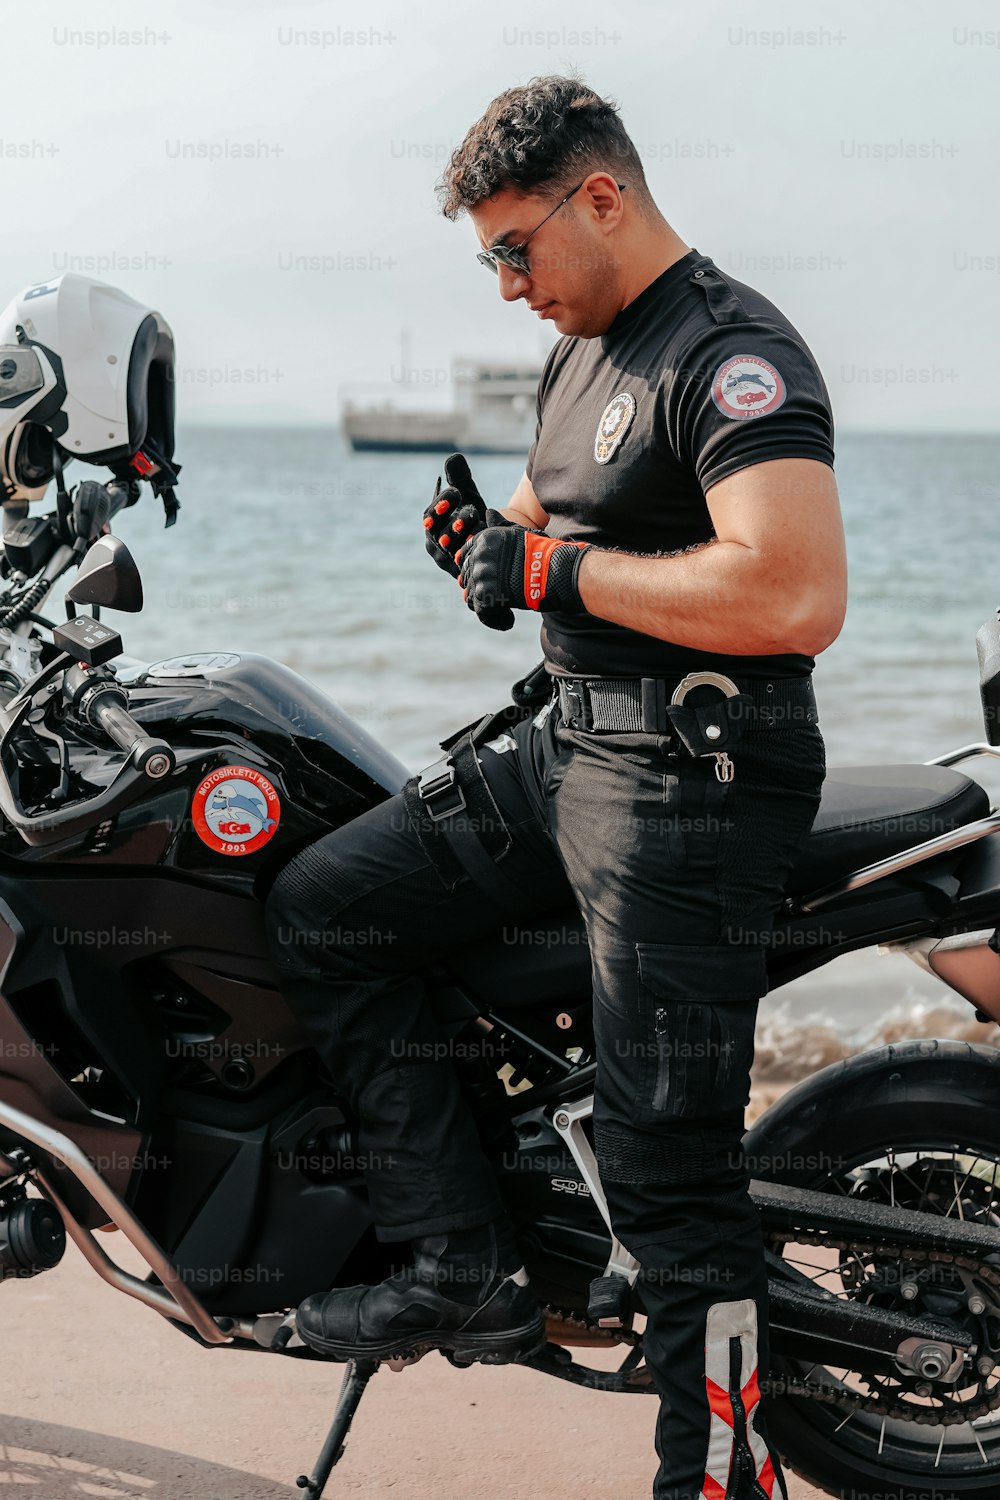 Un hombre sentado en una motocicleta mirando su teléfono celular